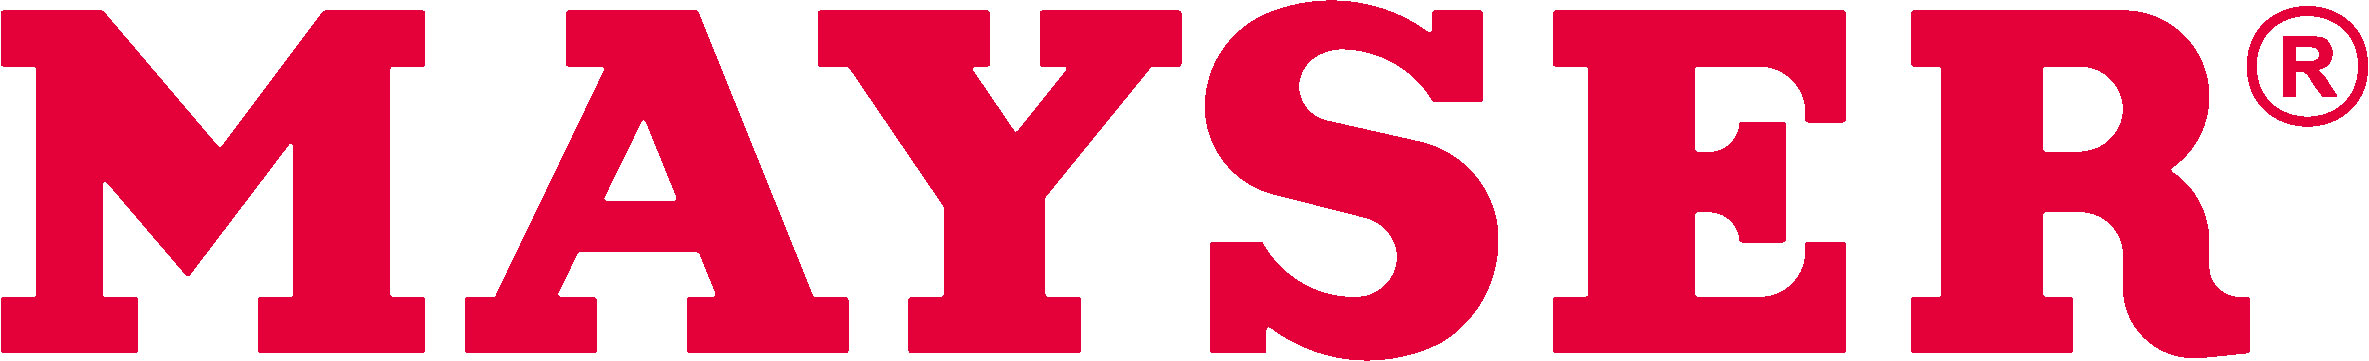 Mayser Logo_RGB